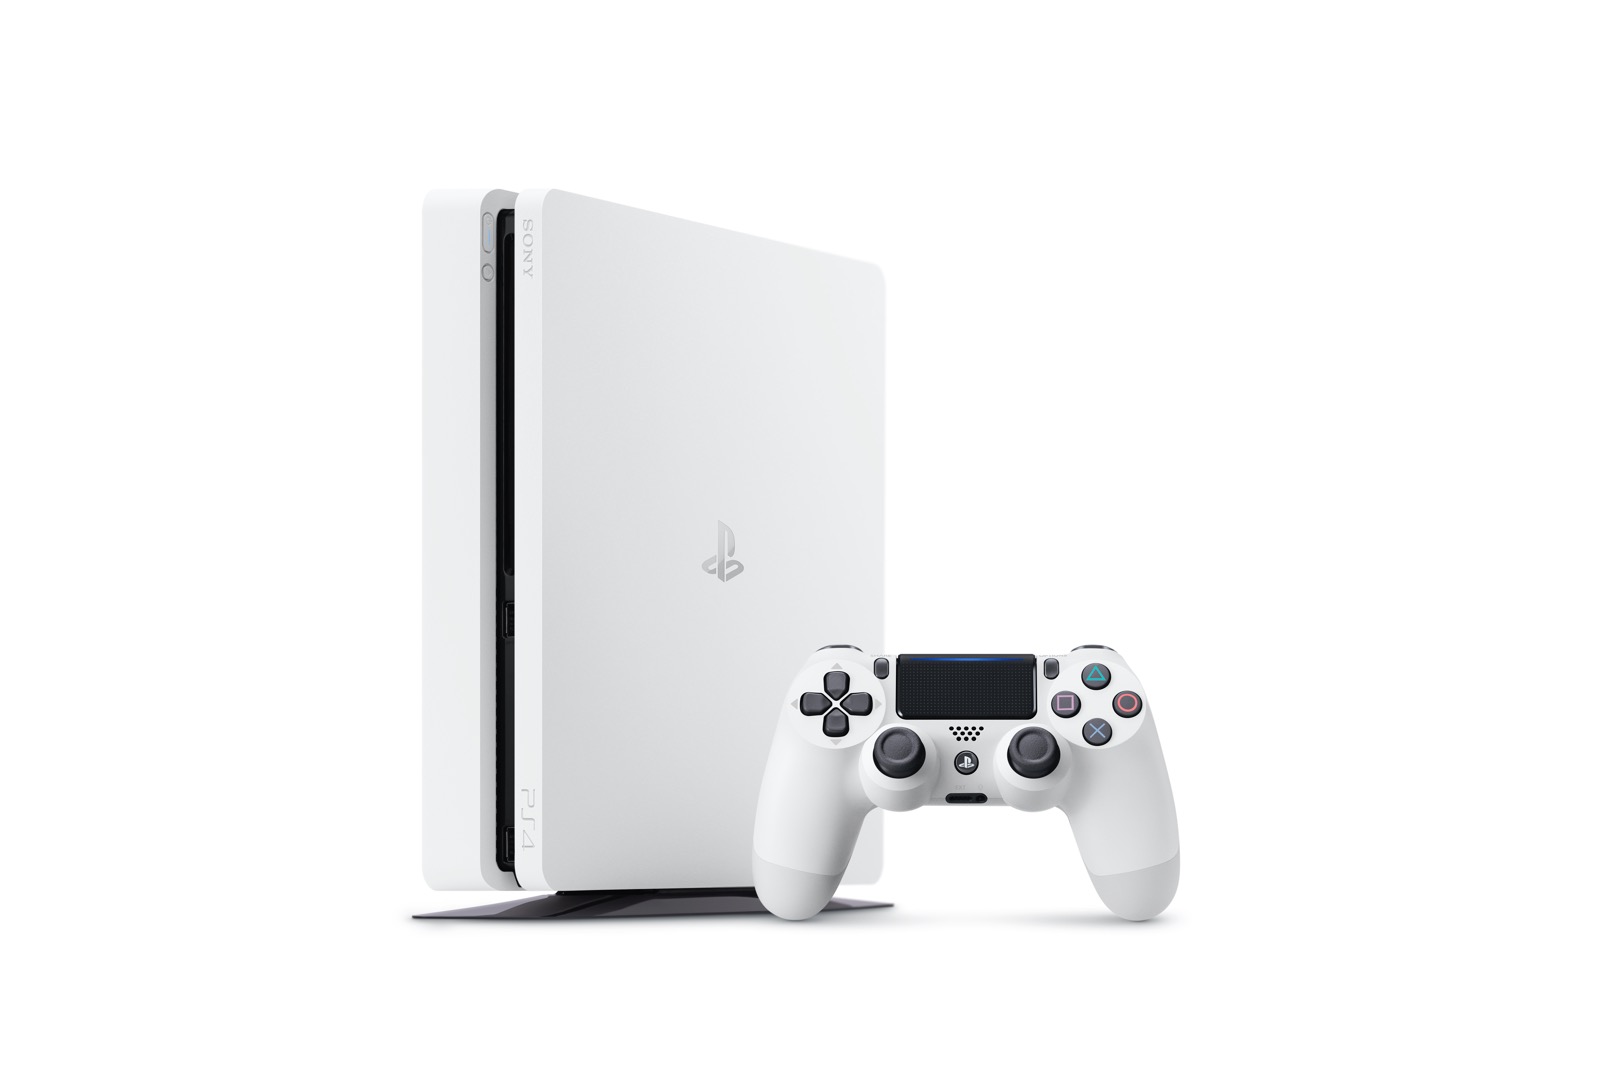 画像集/新型PS4本体の「グレイシャー・ホワイト」モデルが2月23日に発売決定。DUALSHOCK 4のホワイト/カモフラージュモデルも登場